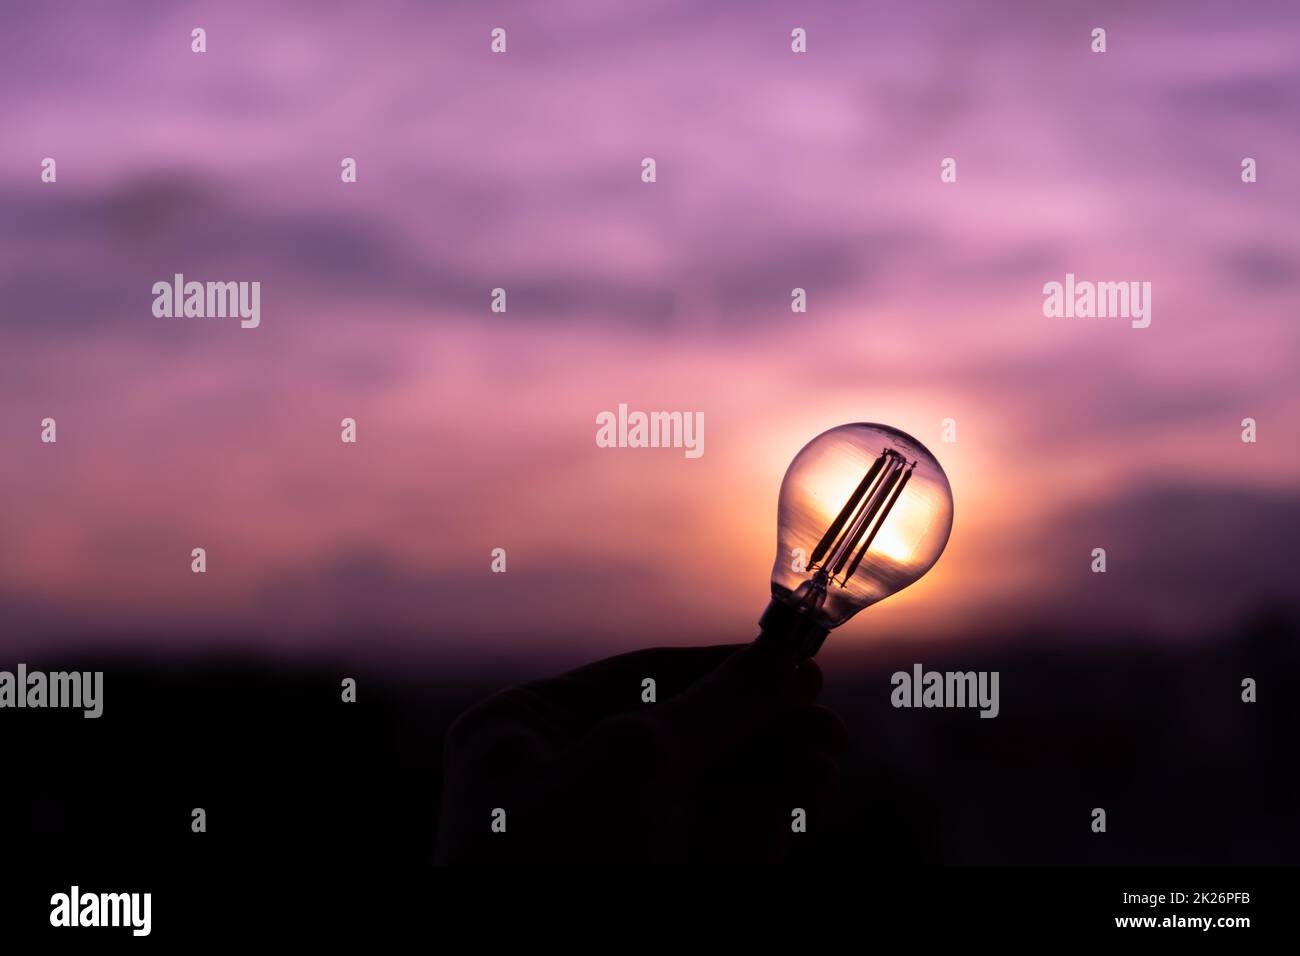 Silhouette einer Glühbirne, die von der Hand einer Person in einem violetten Sonnenuntergangshimmel gehalten wird, der sprachlos bleibt Stockfoto